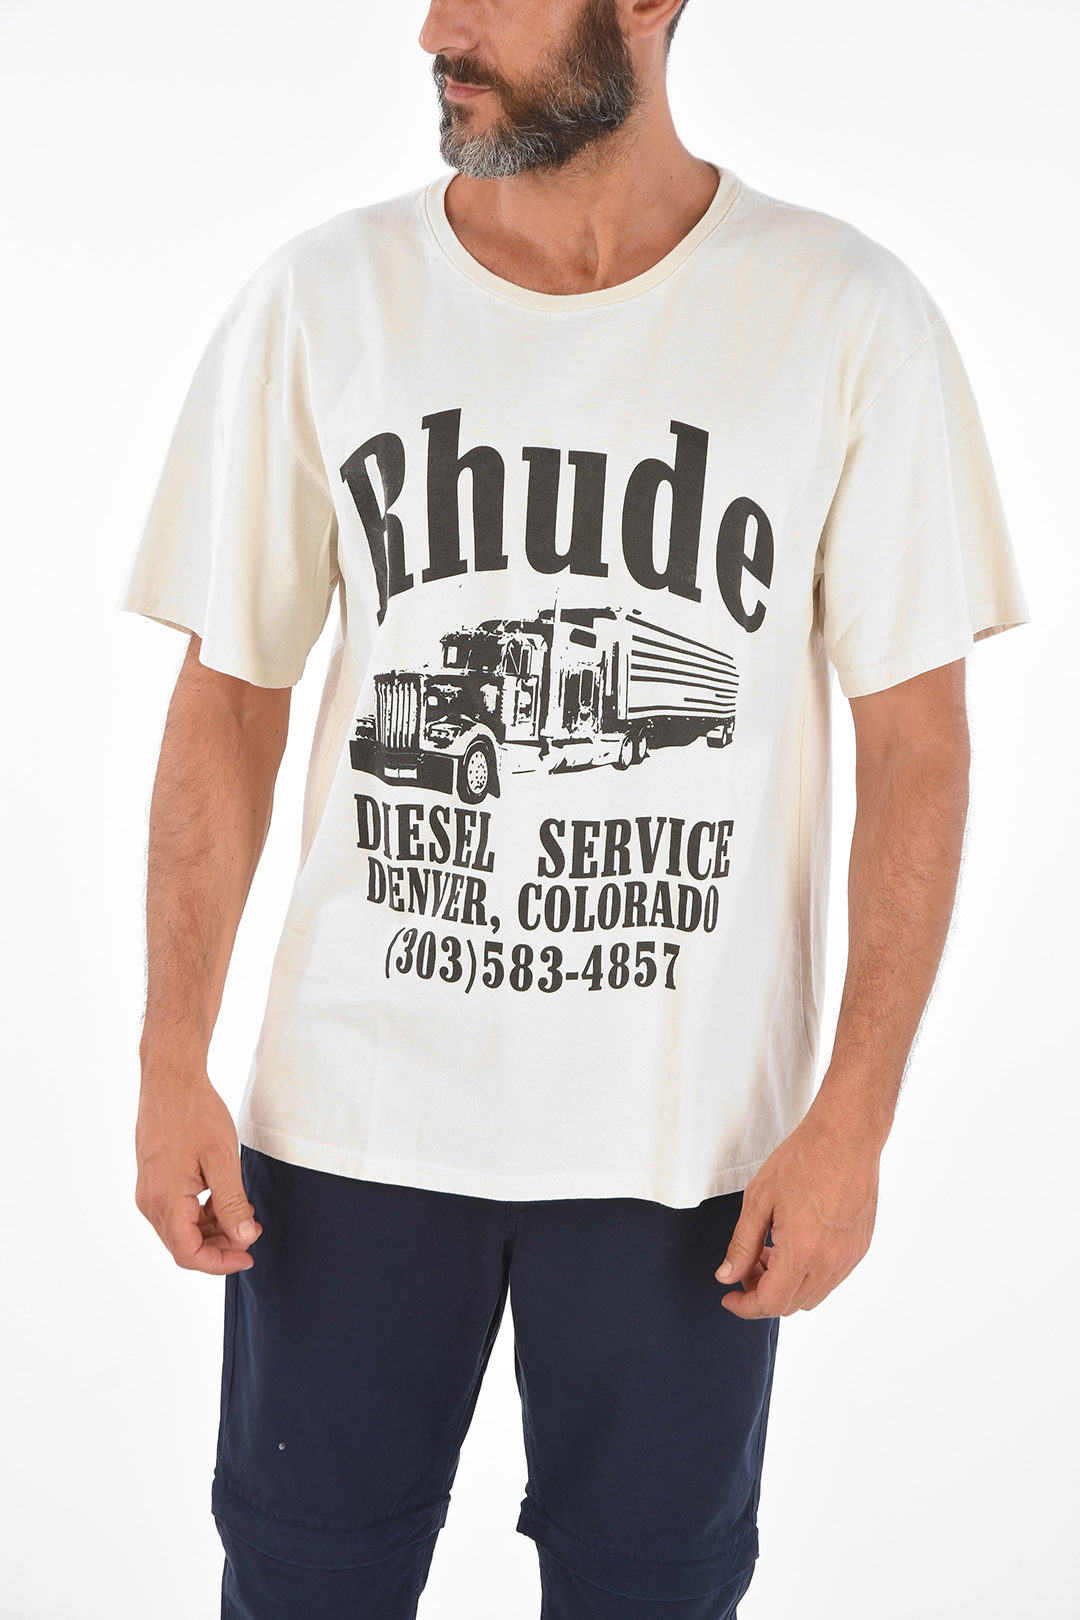 Rhude Black Diesel Service Hoodie Rhude